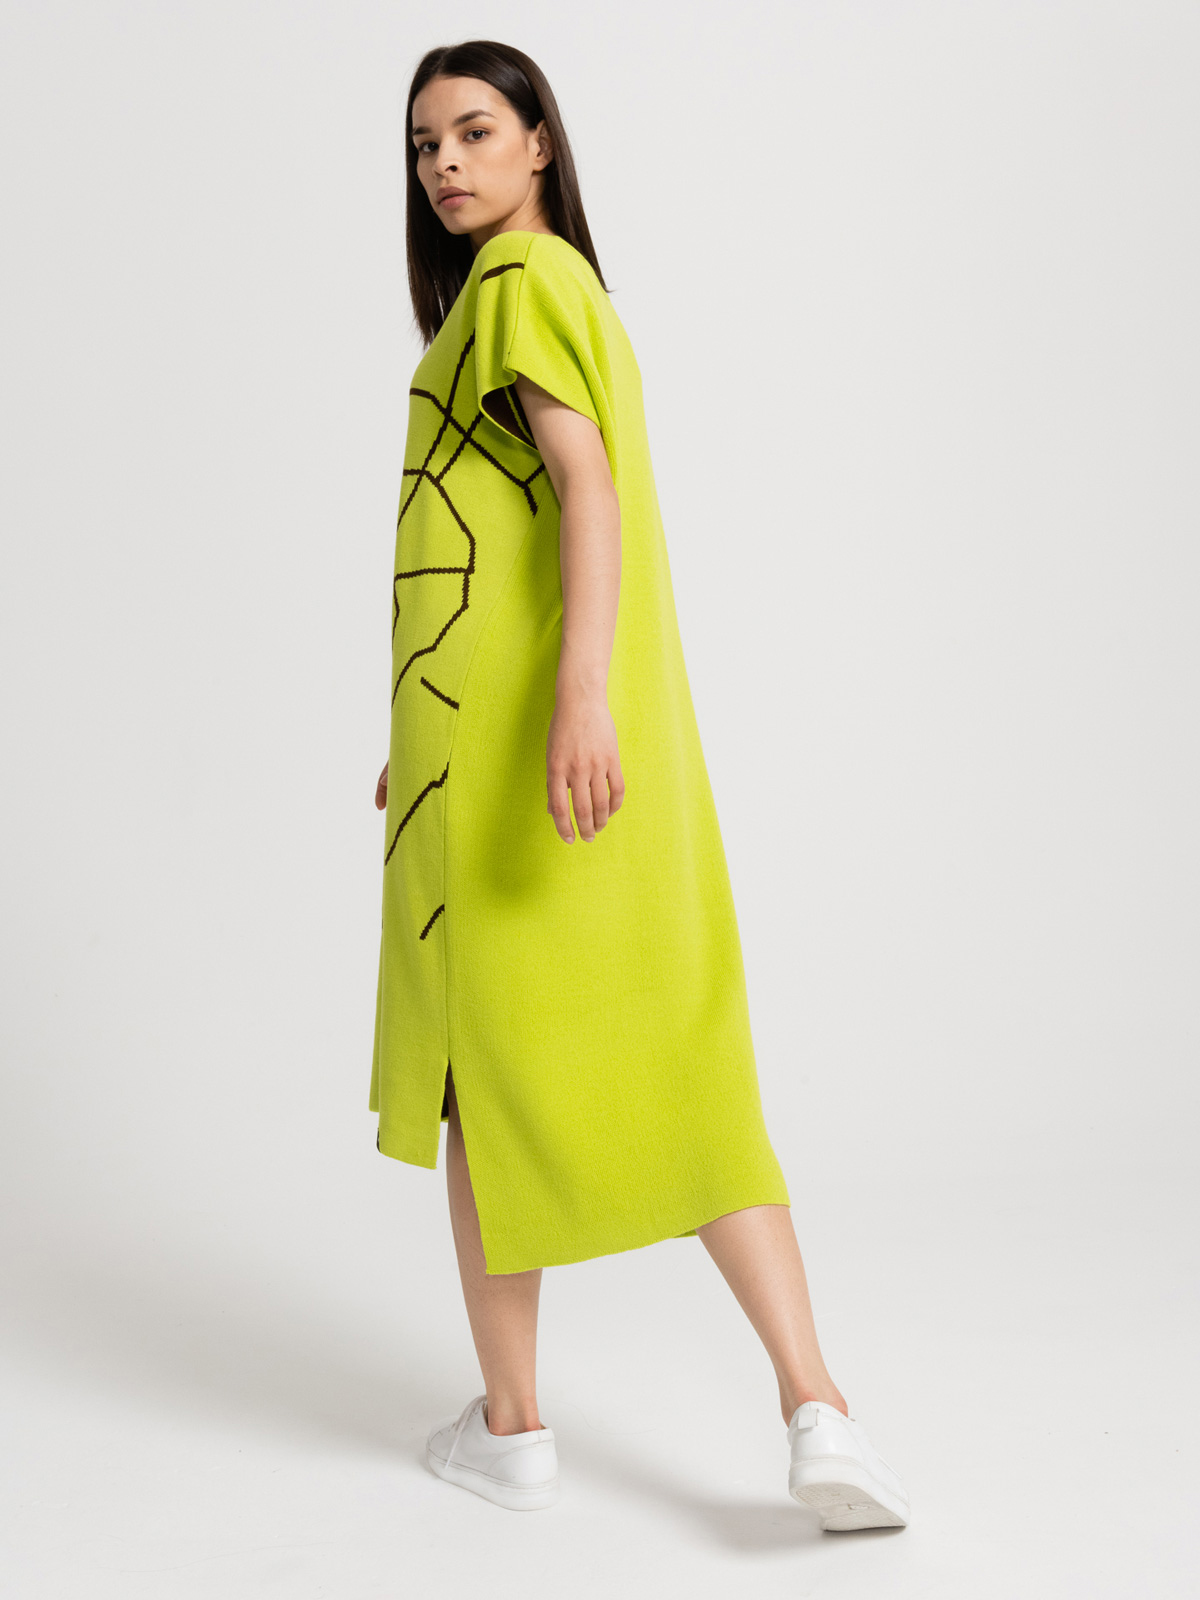 Вязаное платье ЦАО - Светло-оливковое 3